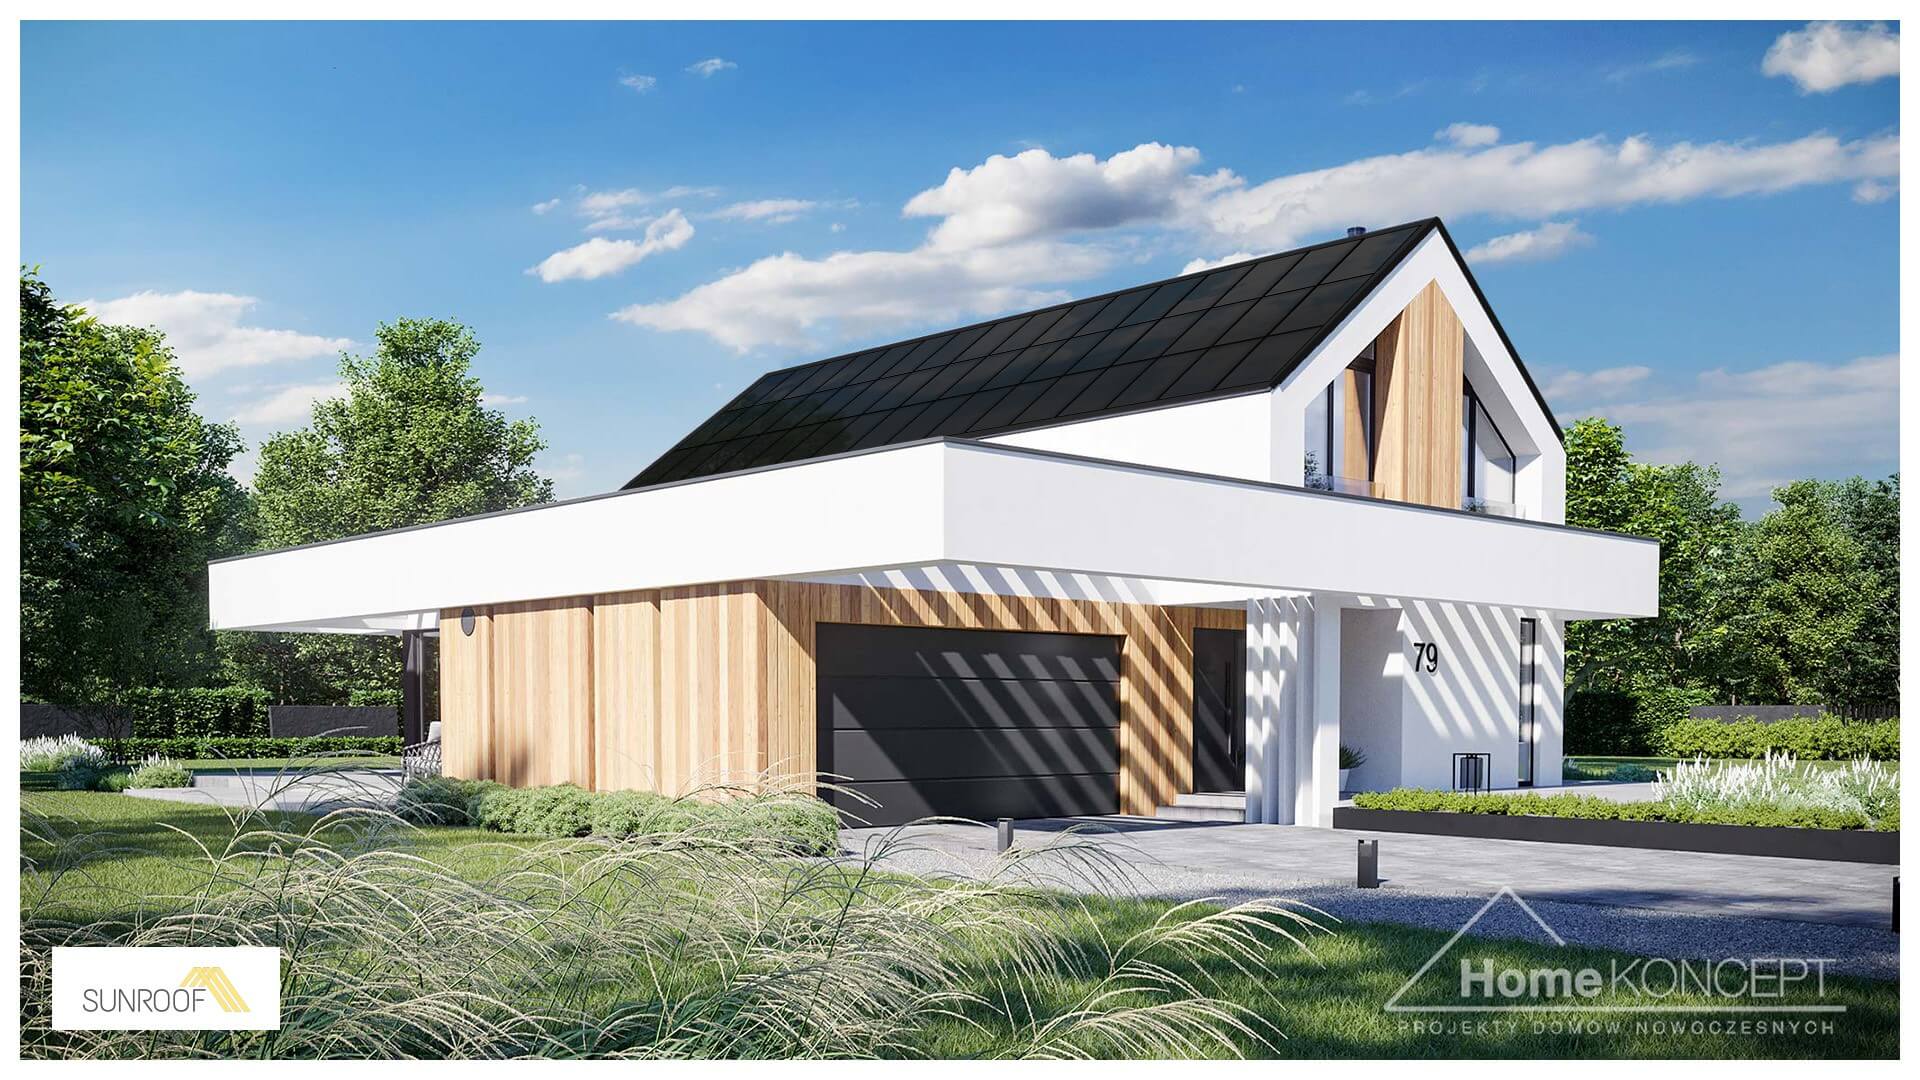 Nowoczesne rozwiązanie dachu solarnego SunRoof w gotowym projekcie domu HOMEKONCEPT 79